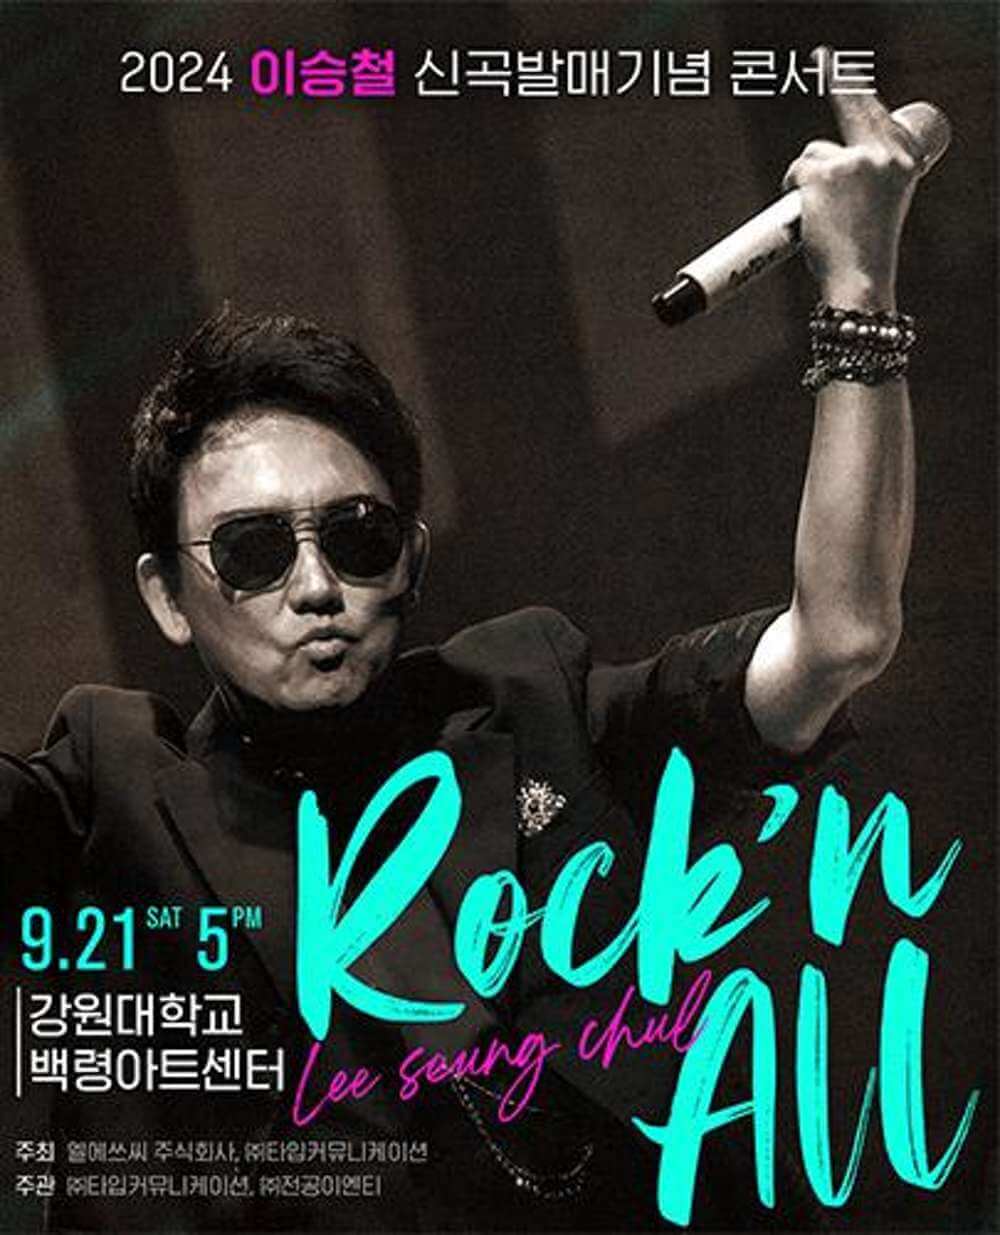 2024 이승철 신곡발매기념 콘서트 “Rock'n All” - 춘천